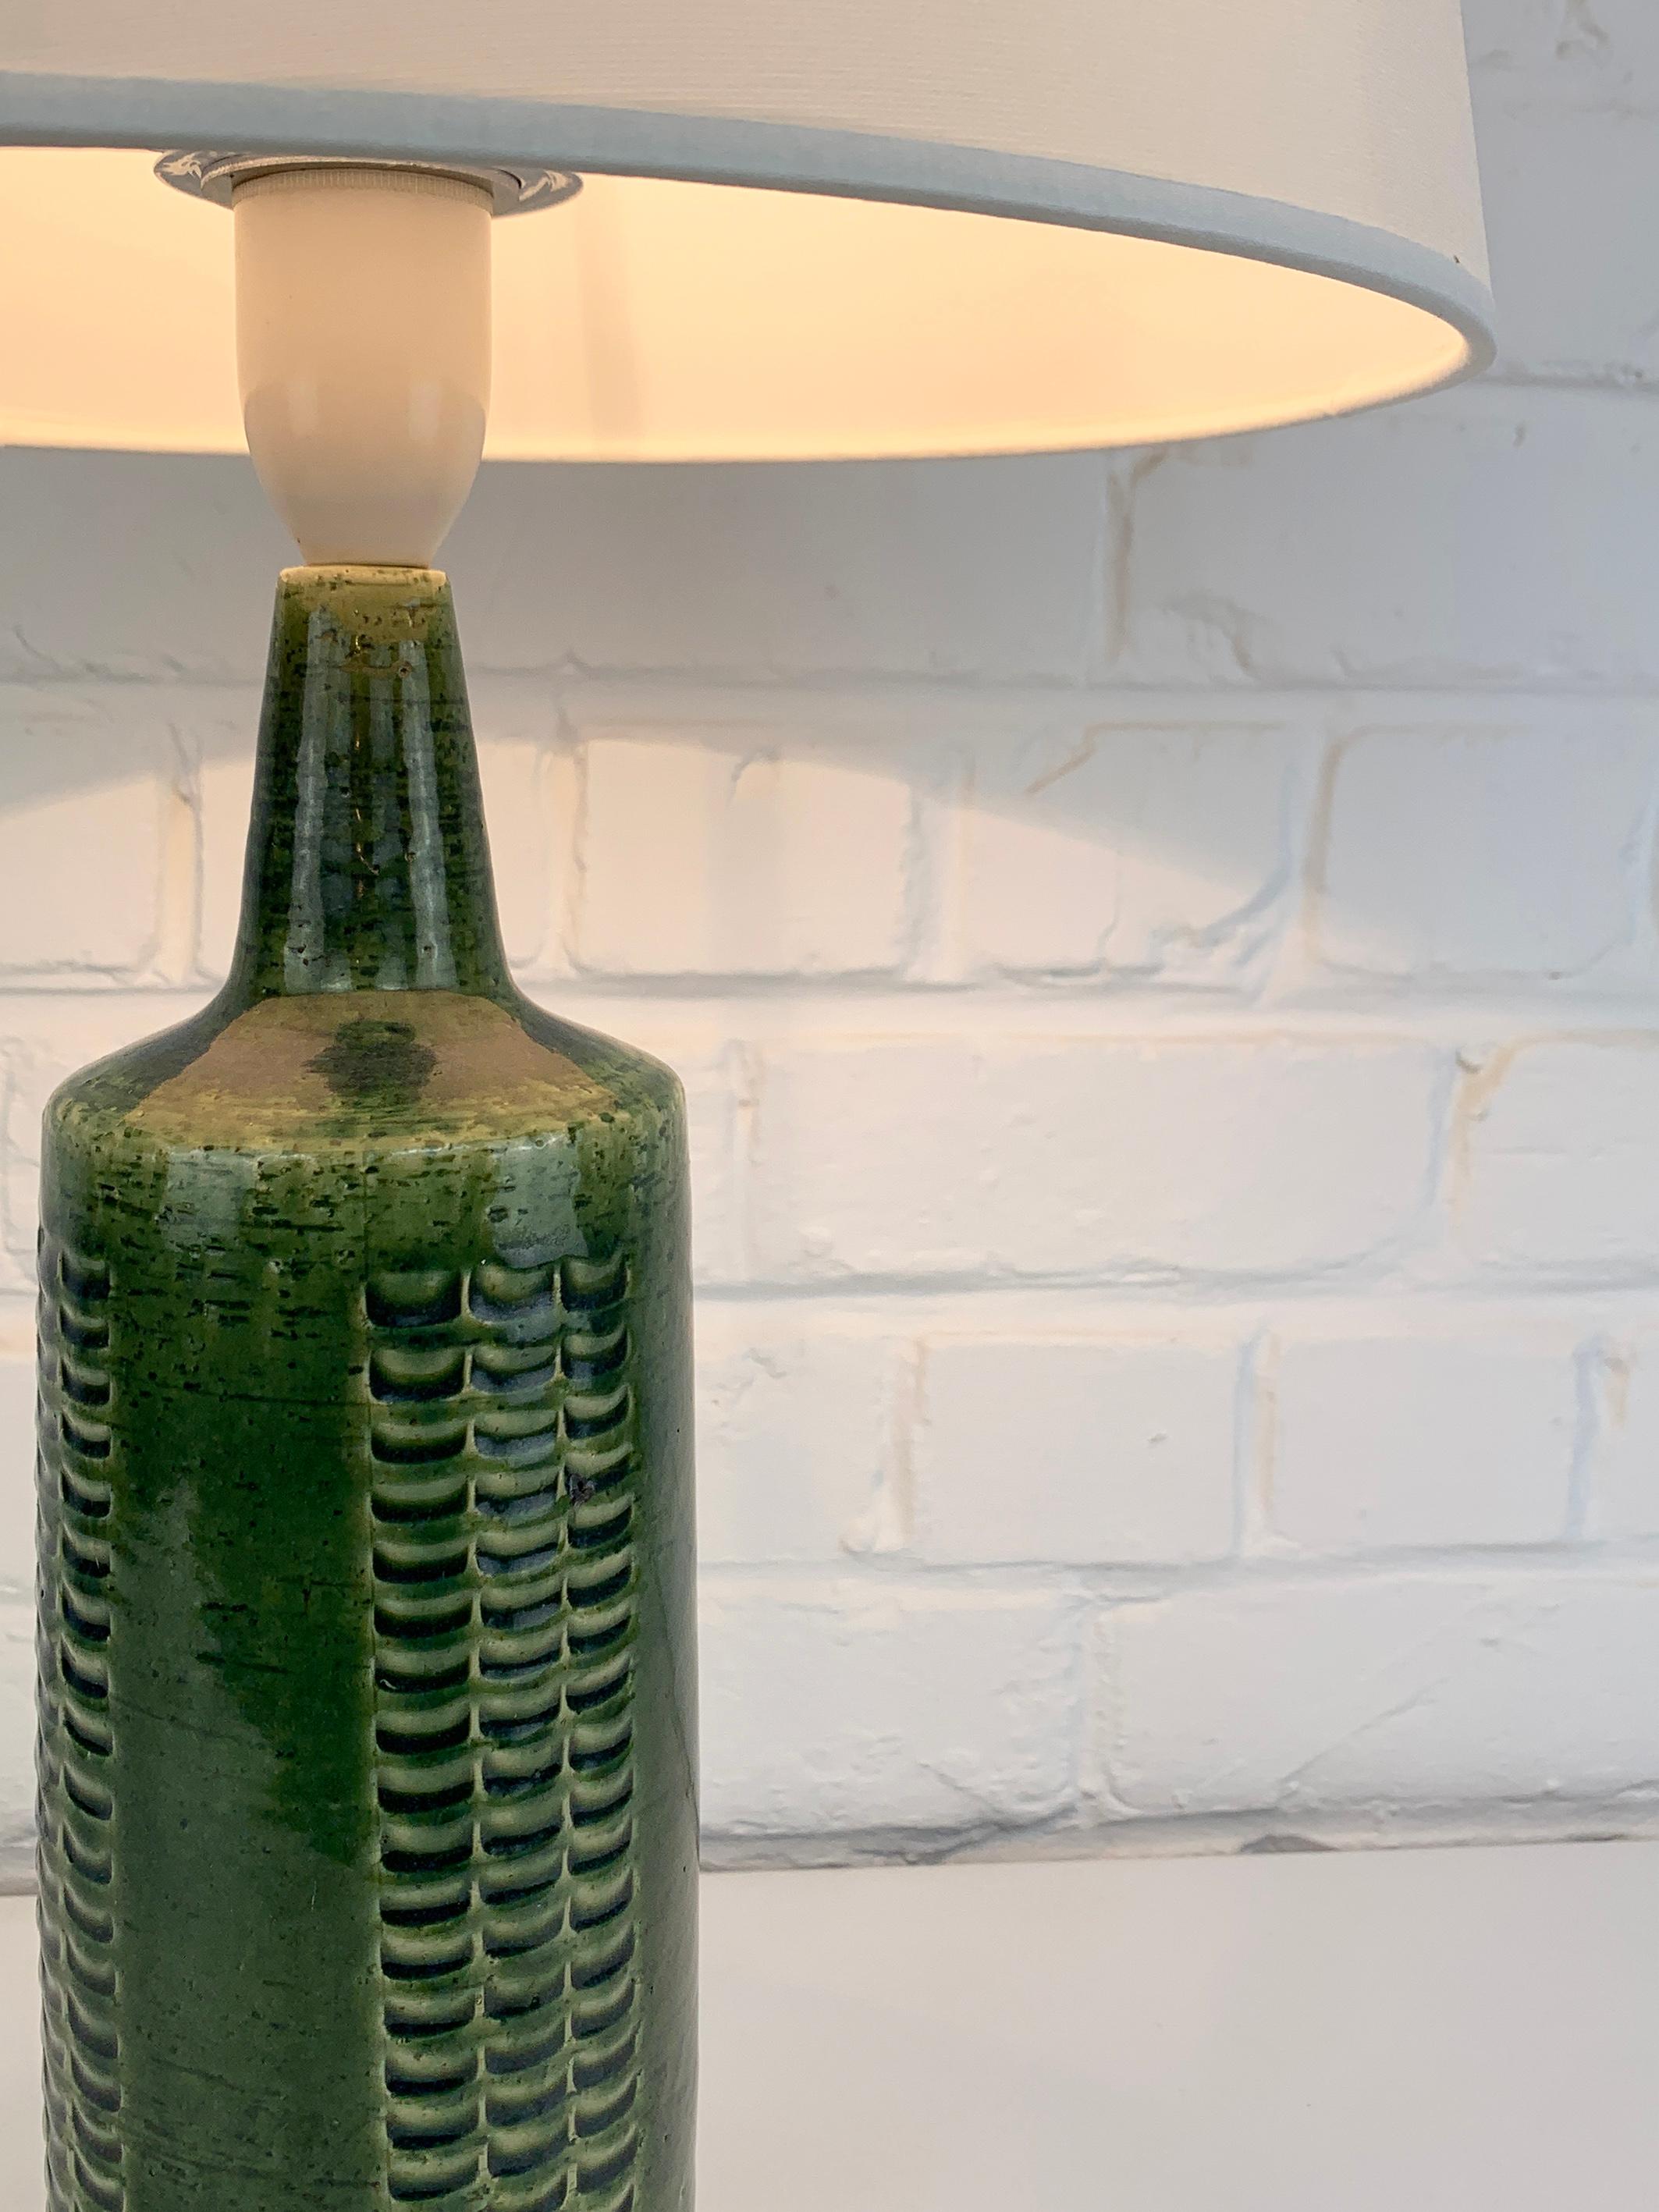 Diese Lampe wurde von Palshus (Dänemark) hergestellt, das von Per und seiner Frau Annelise Linnemann-Schmidt gegründet wurde. 

Das Ehepaar schuf und produzierte Schamottegegenstände mit eingeprägten Verzierungen (Geschirr, Vasen und Lampen). Ihr